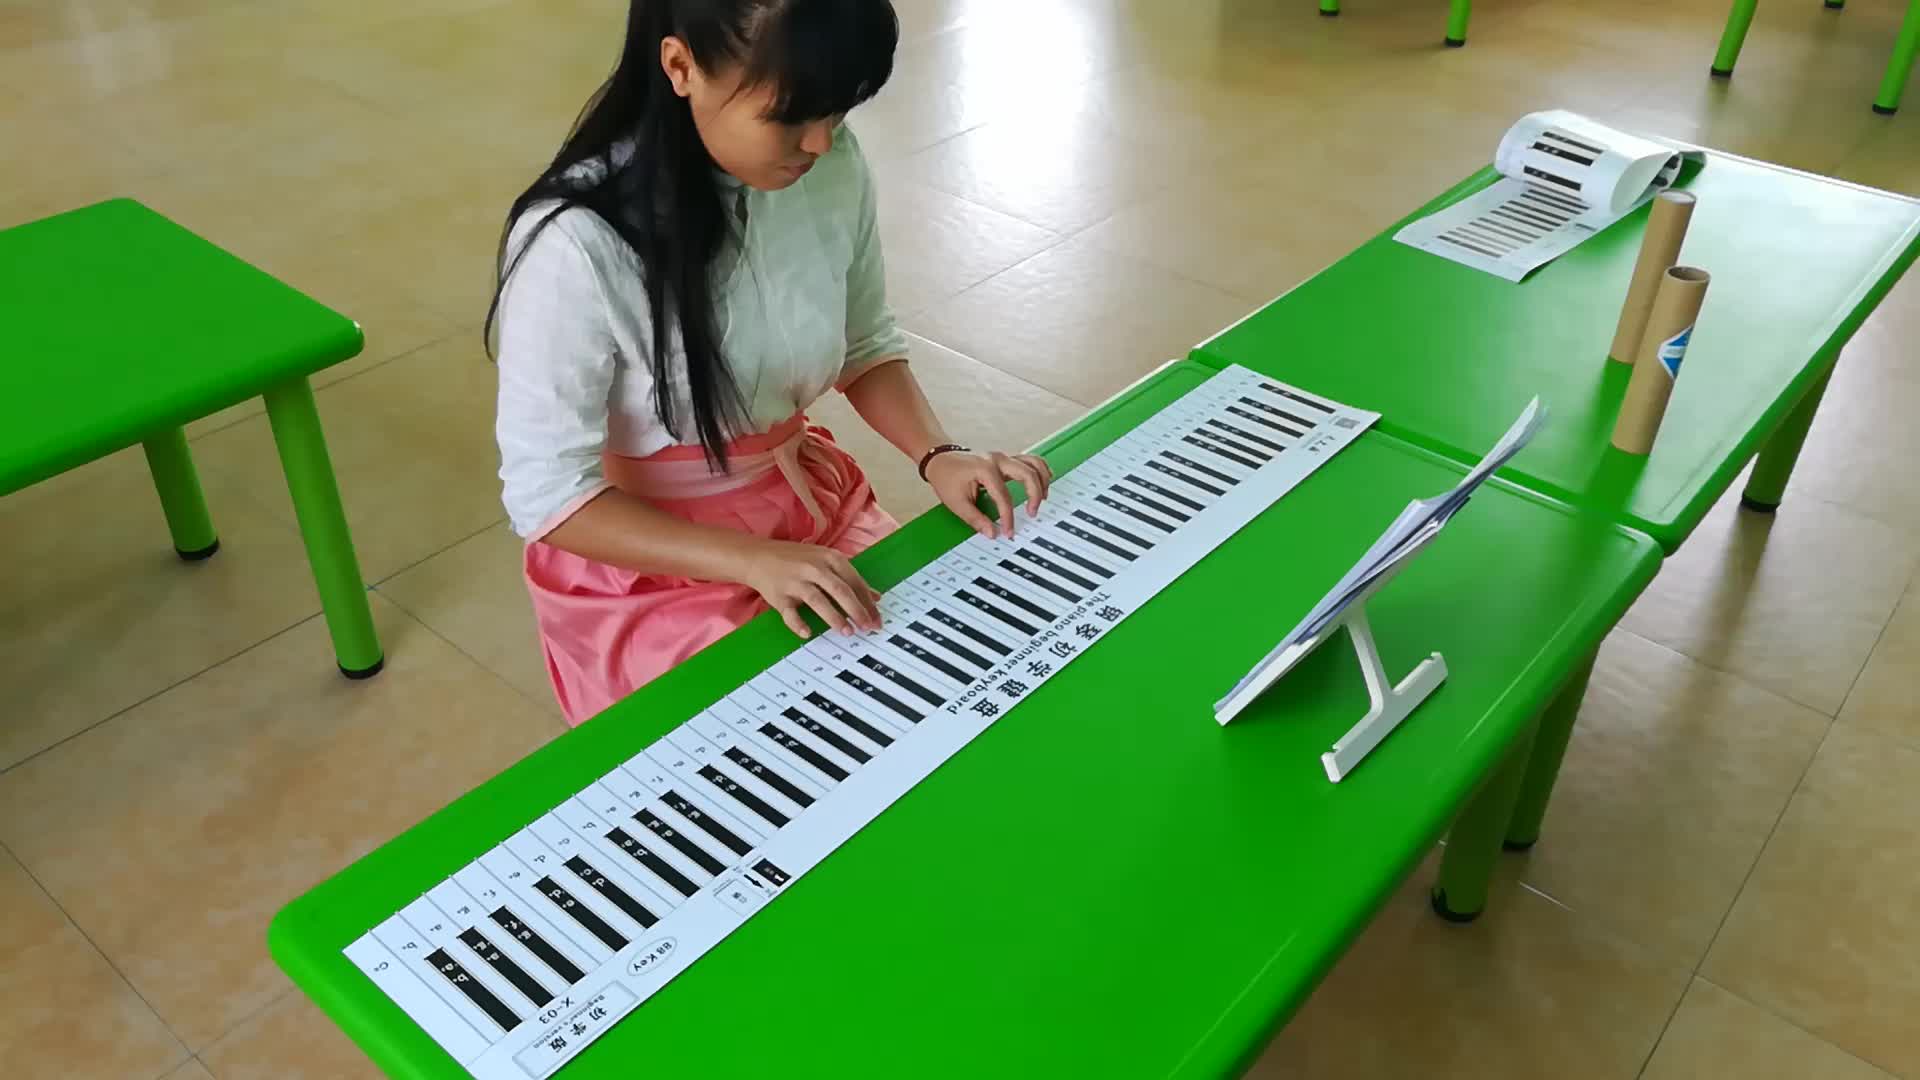 88건반 피아노 건반 운지법 연습지 교육 49건 61건 전자 오르간 학습 오선표 표기법 비교표